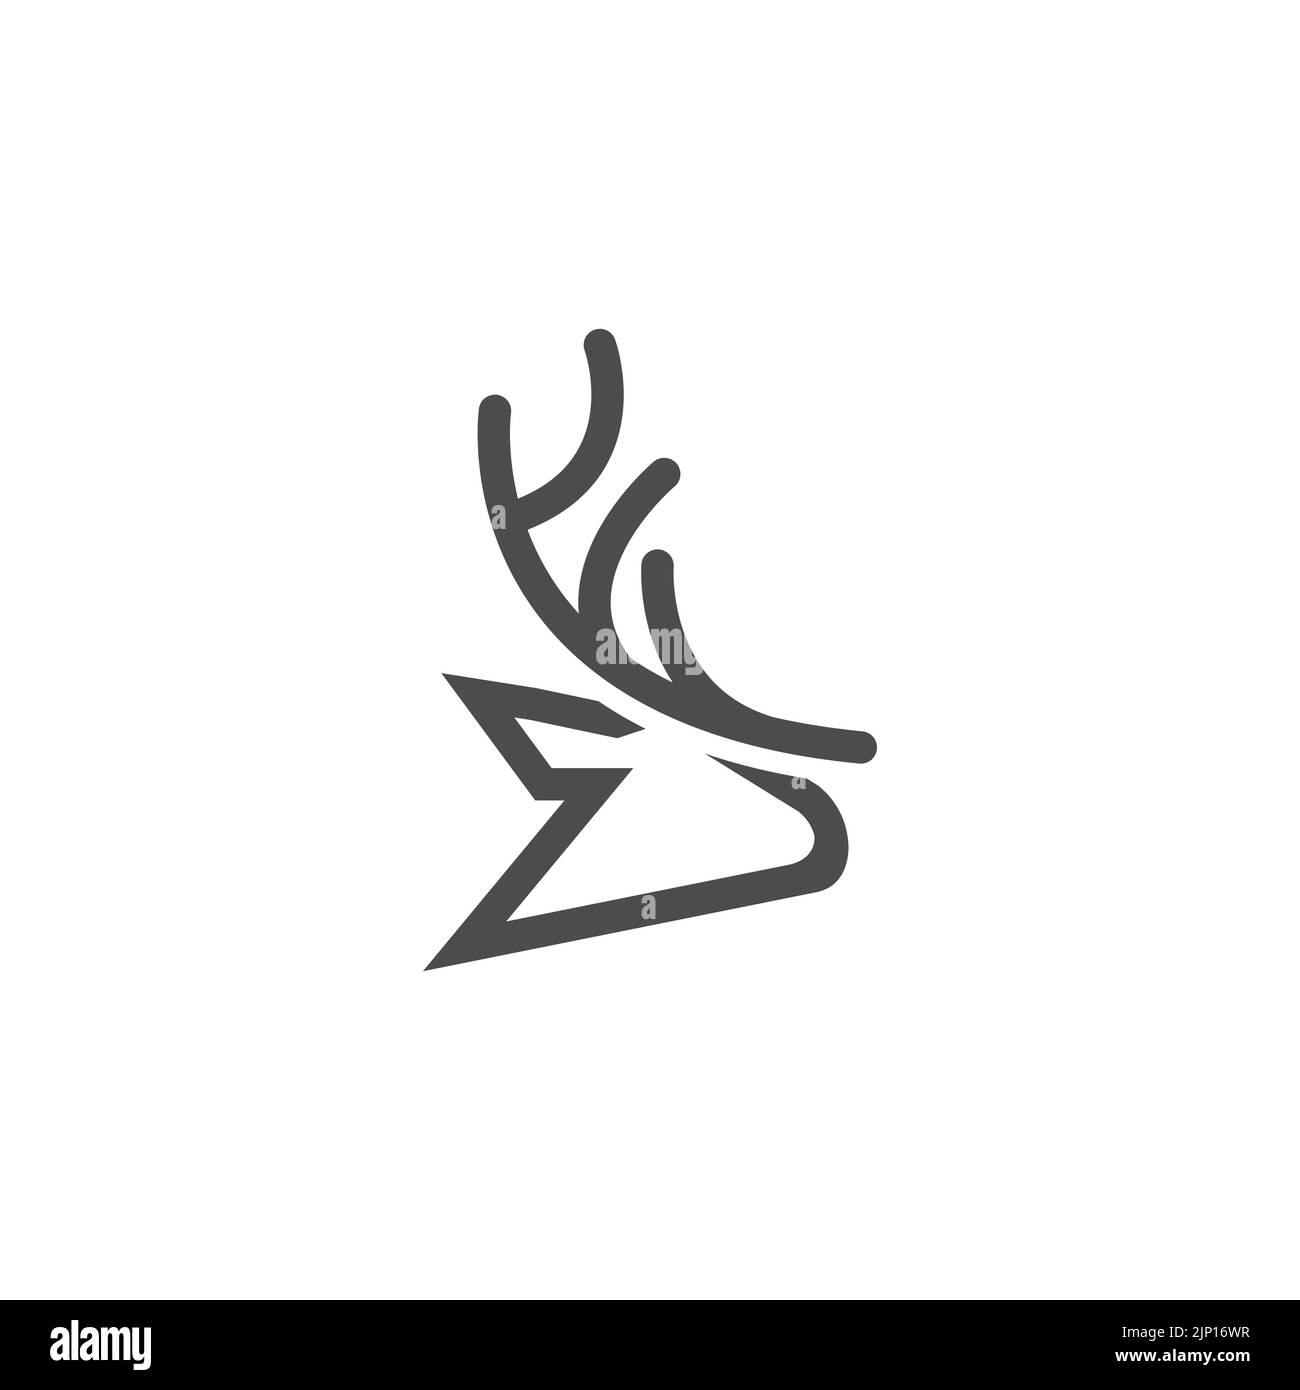 deer logo design inspiration. deer head,deer monoline logo design vector template.EPS 10 Stock Vector